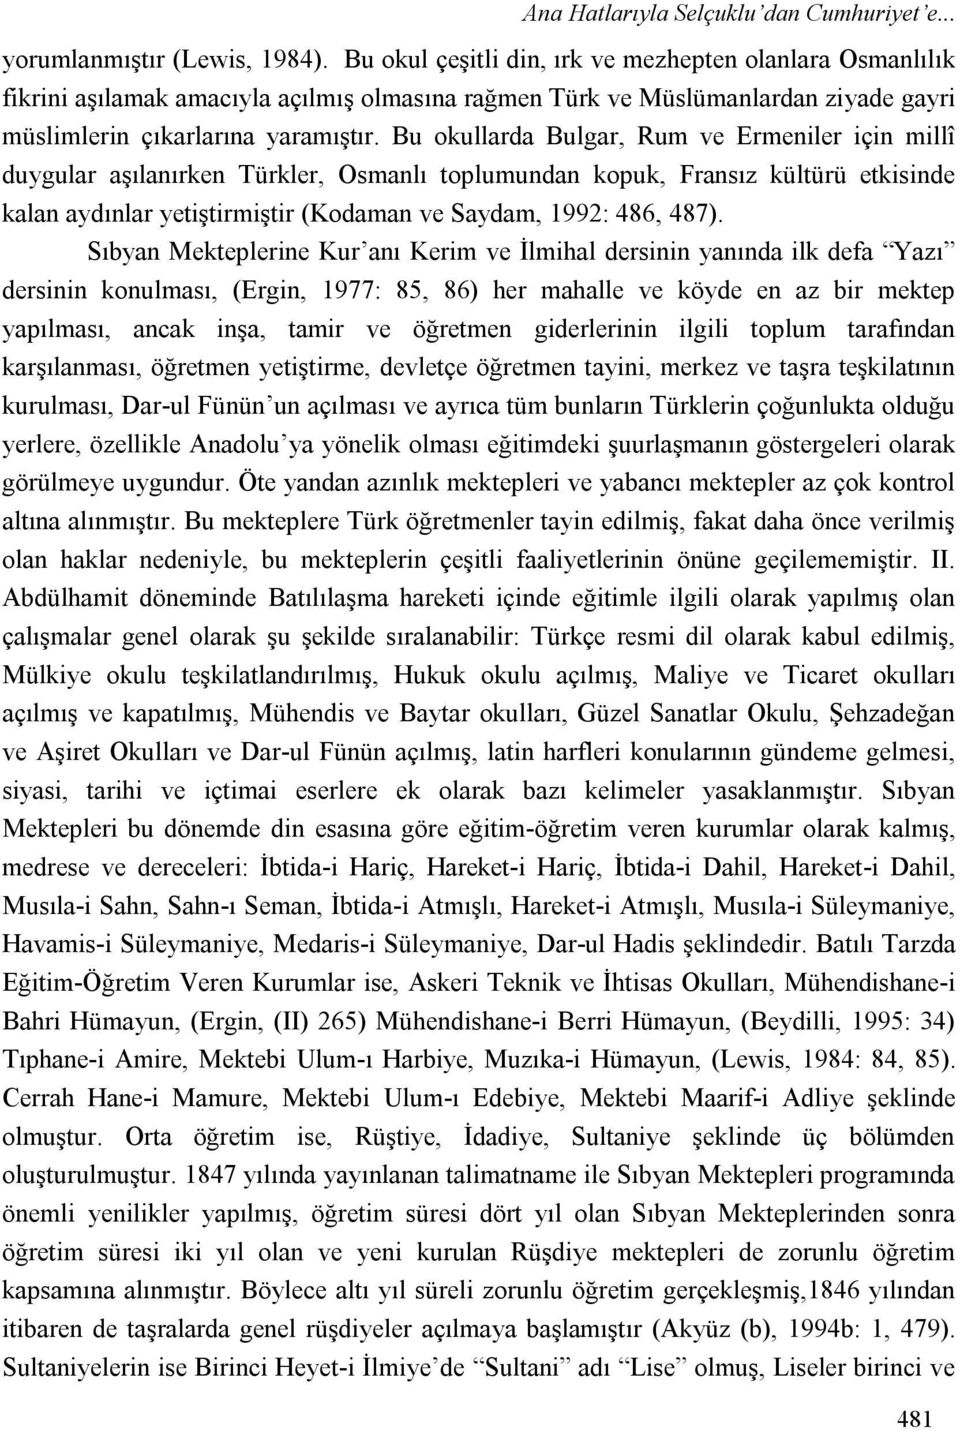 Bu okullarda Bulgar, Rum ve Ermeniler için millî duygular aşılanırken Türkler, Osmanlı toplumundan kopuk, Fransız kültürü etkisinde kalan aydınlar yetiştirmiştir (Kodaman ve Saydam, 1992: 486, 487).